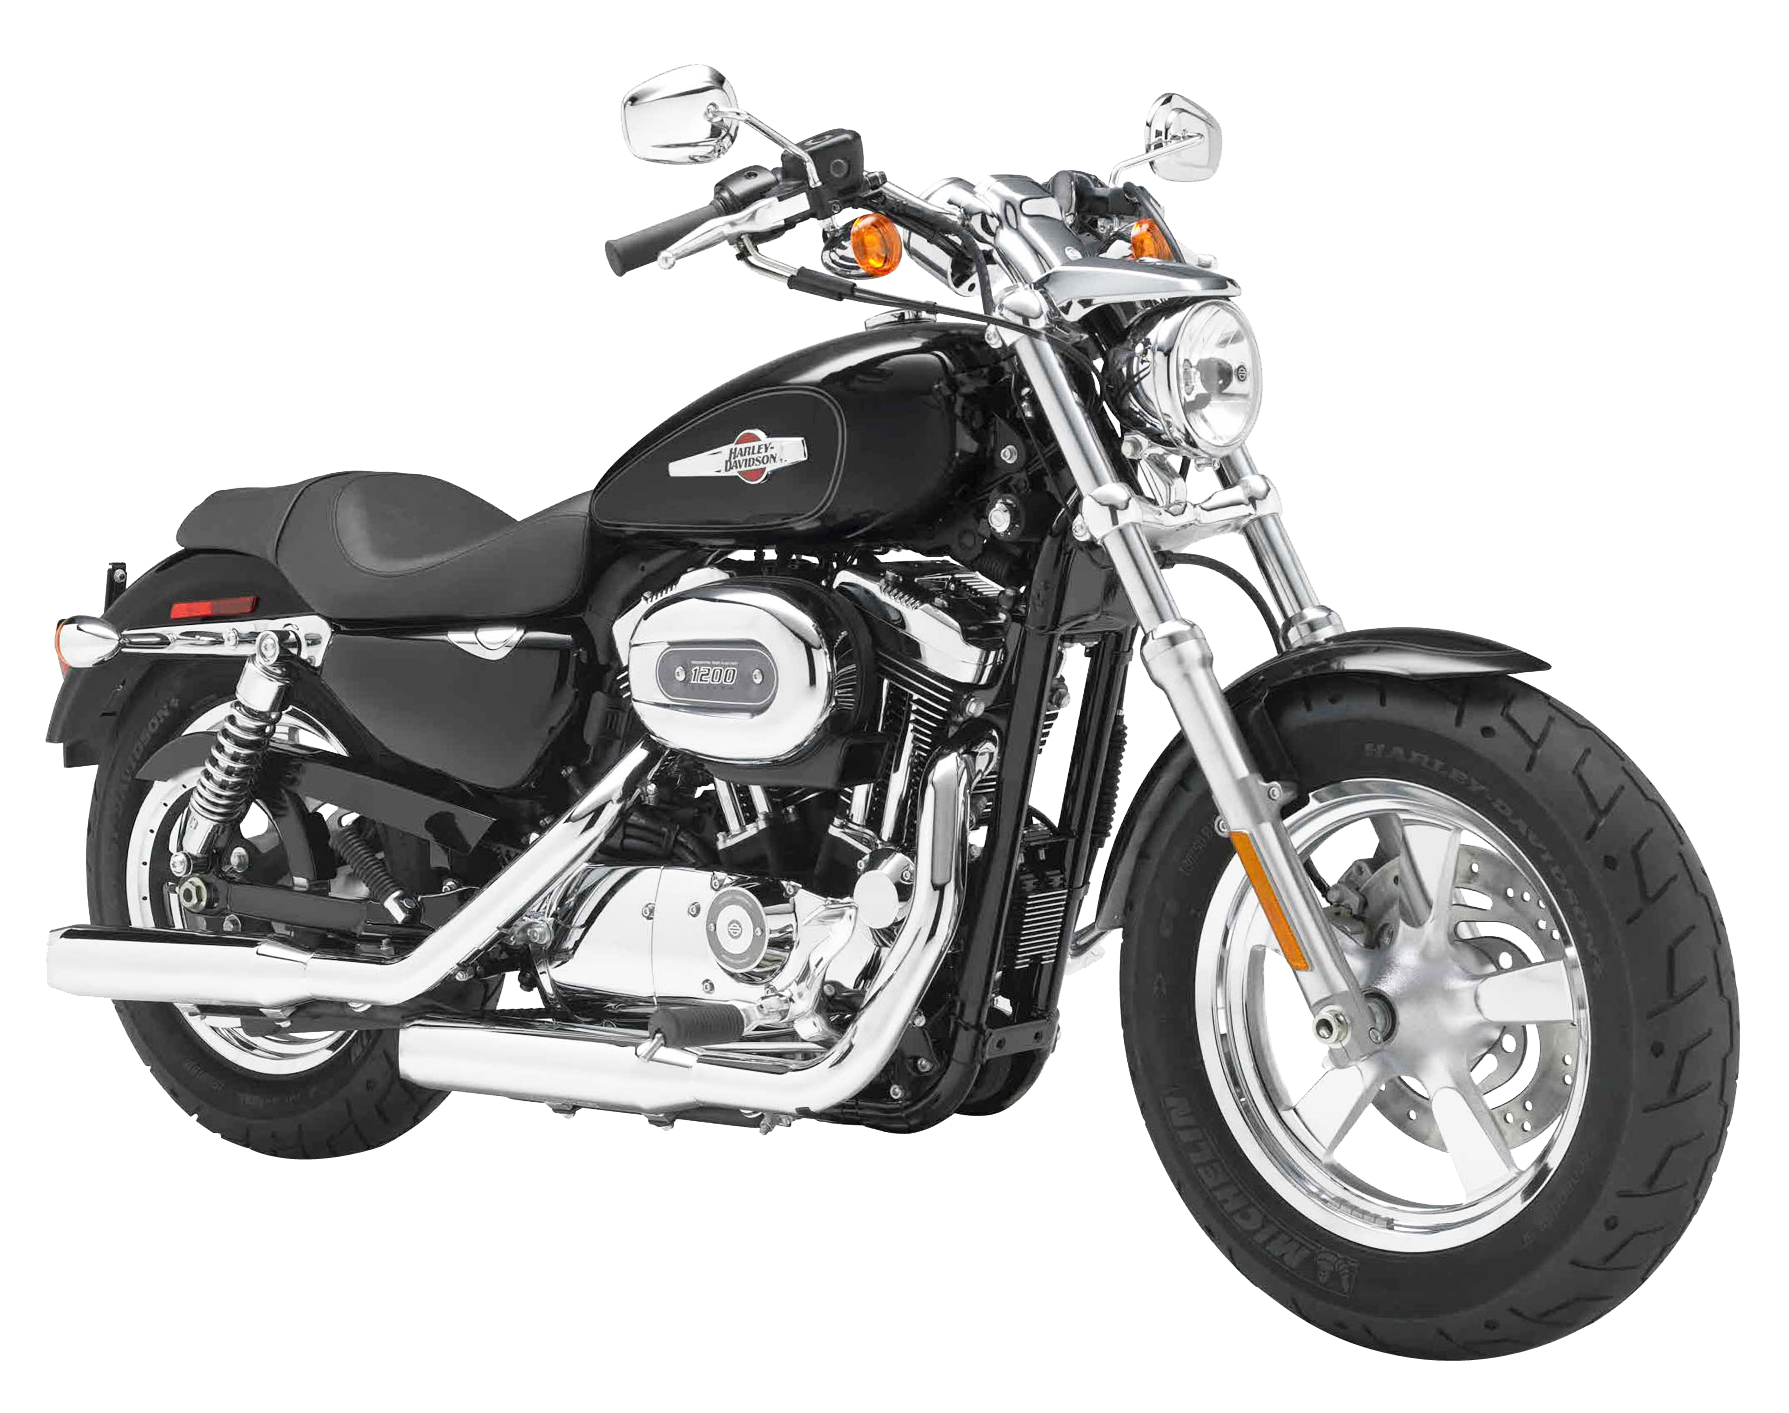 Harley Davidson Motorcycle Png - KibrisPDR